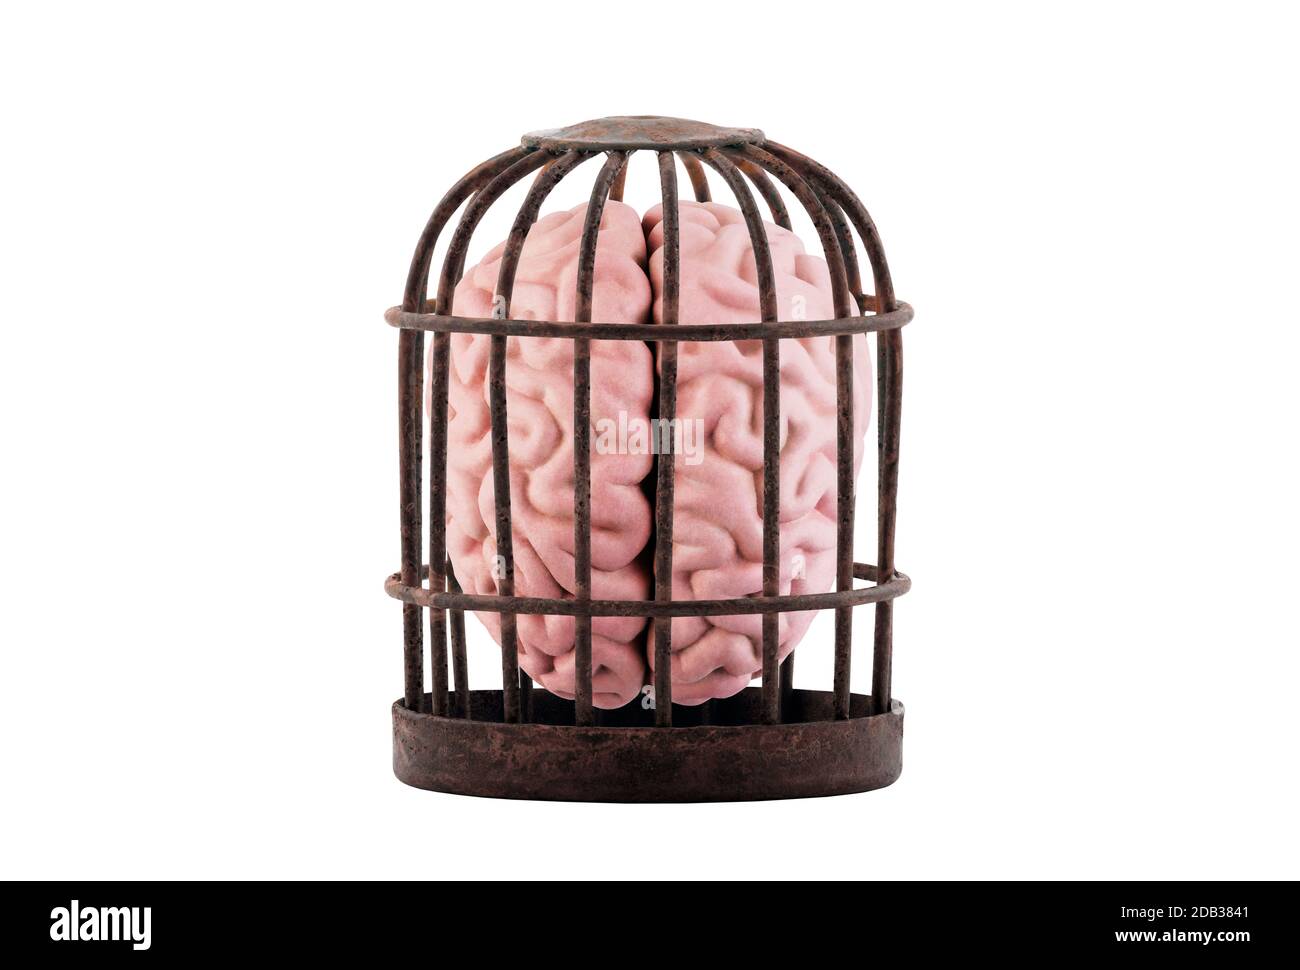 El cerebro humano atrapado en una vieja jaula oxidada aislada sobre blanco. Libera tu concepto mental. Foto de stock